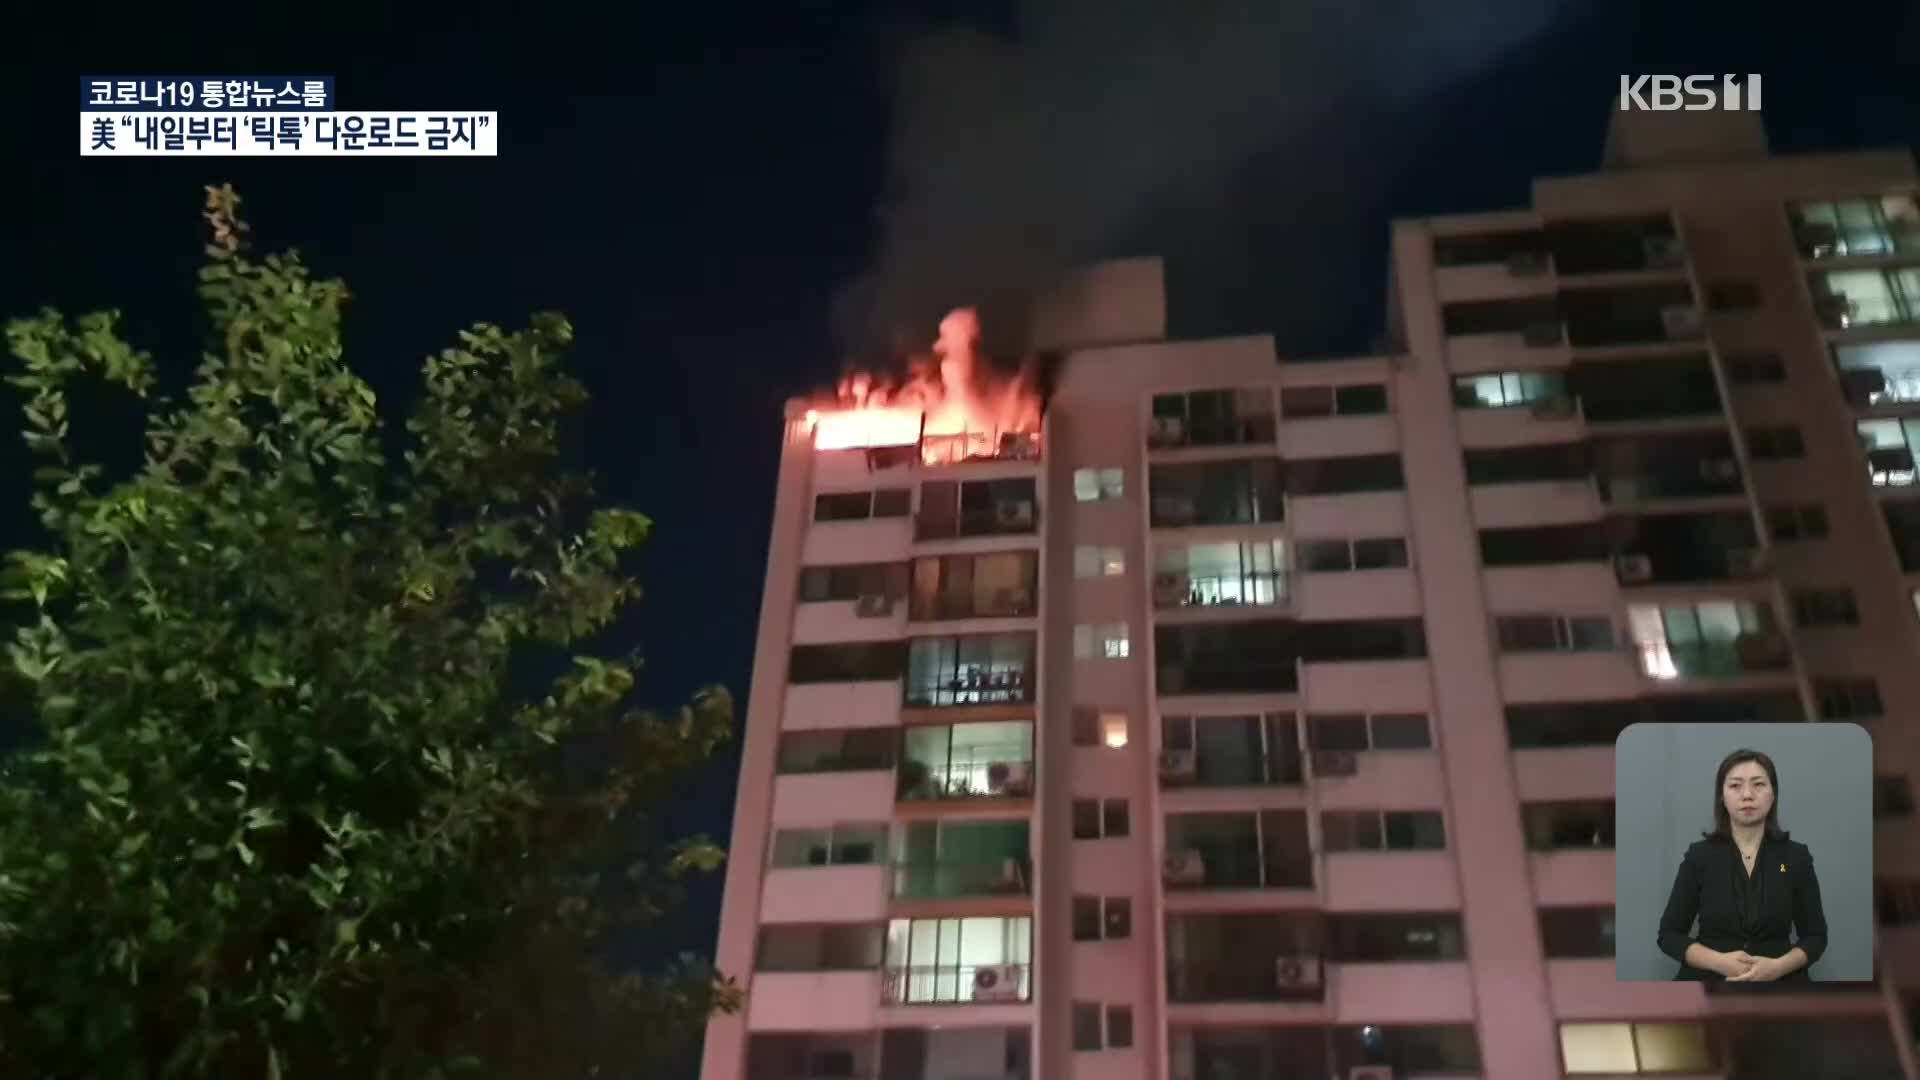 서울 아파트서 불, 1명 숨져…부산 낙동강서 의식 잃은 남성 구조